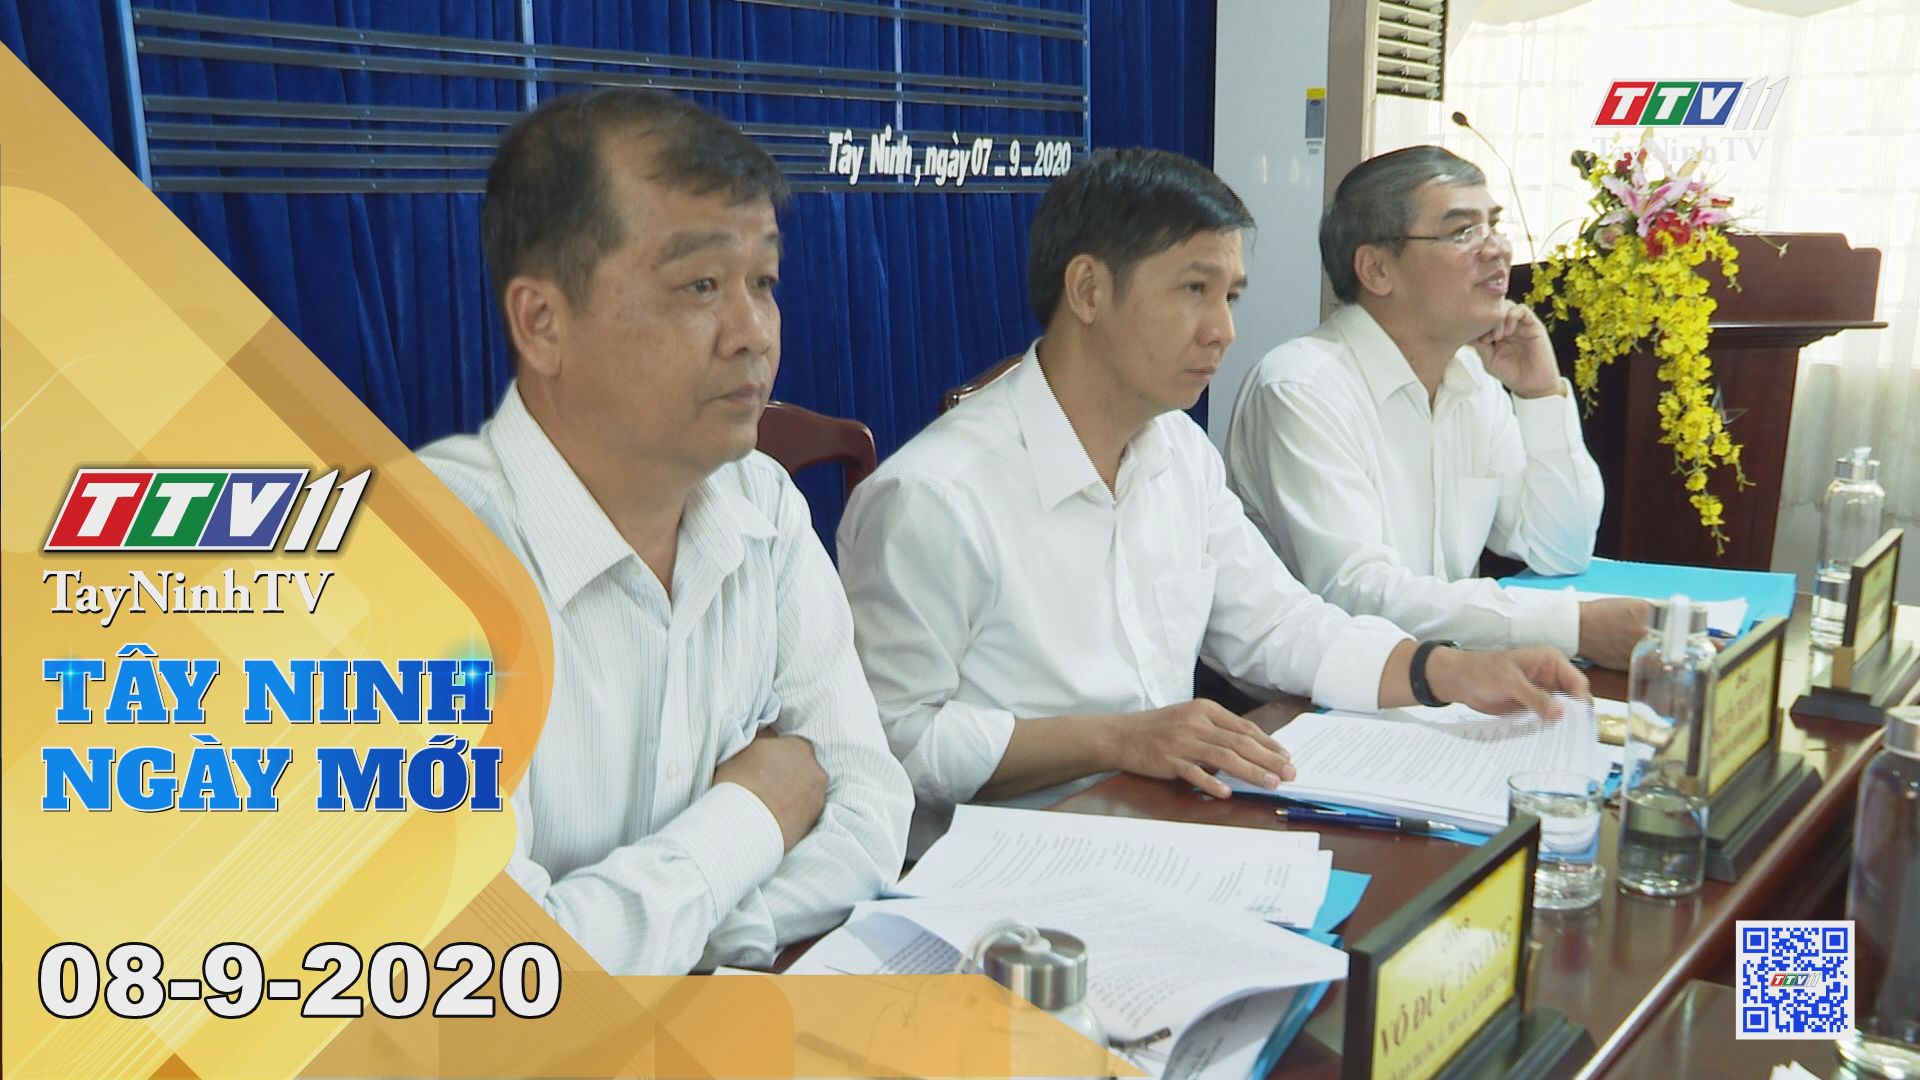 Tây Ninh Ngày Mới 08-9-2020 | Tin tức hôm nay | TayNinhTV 